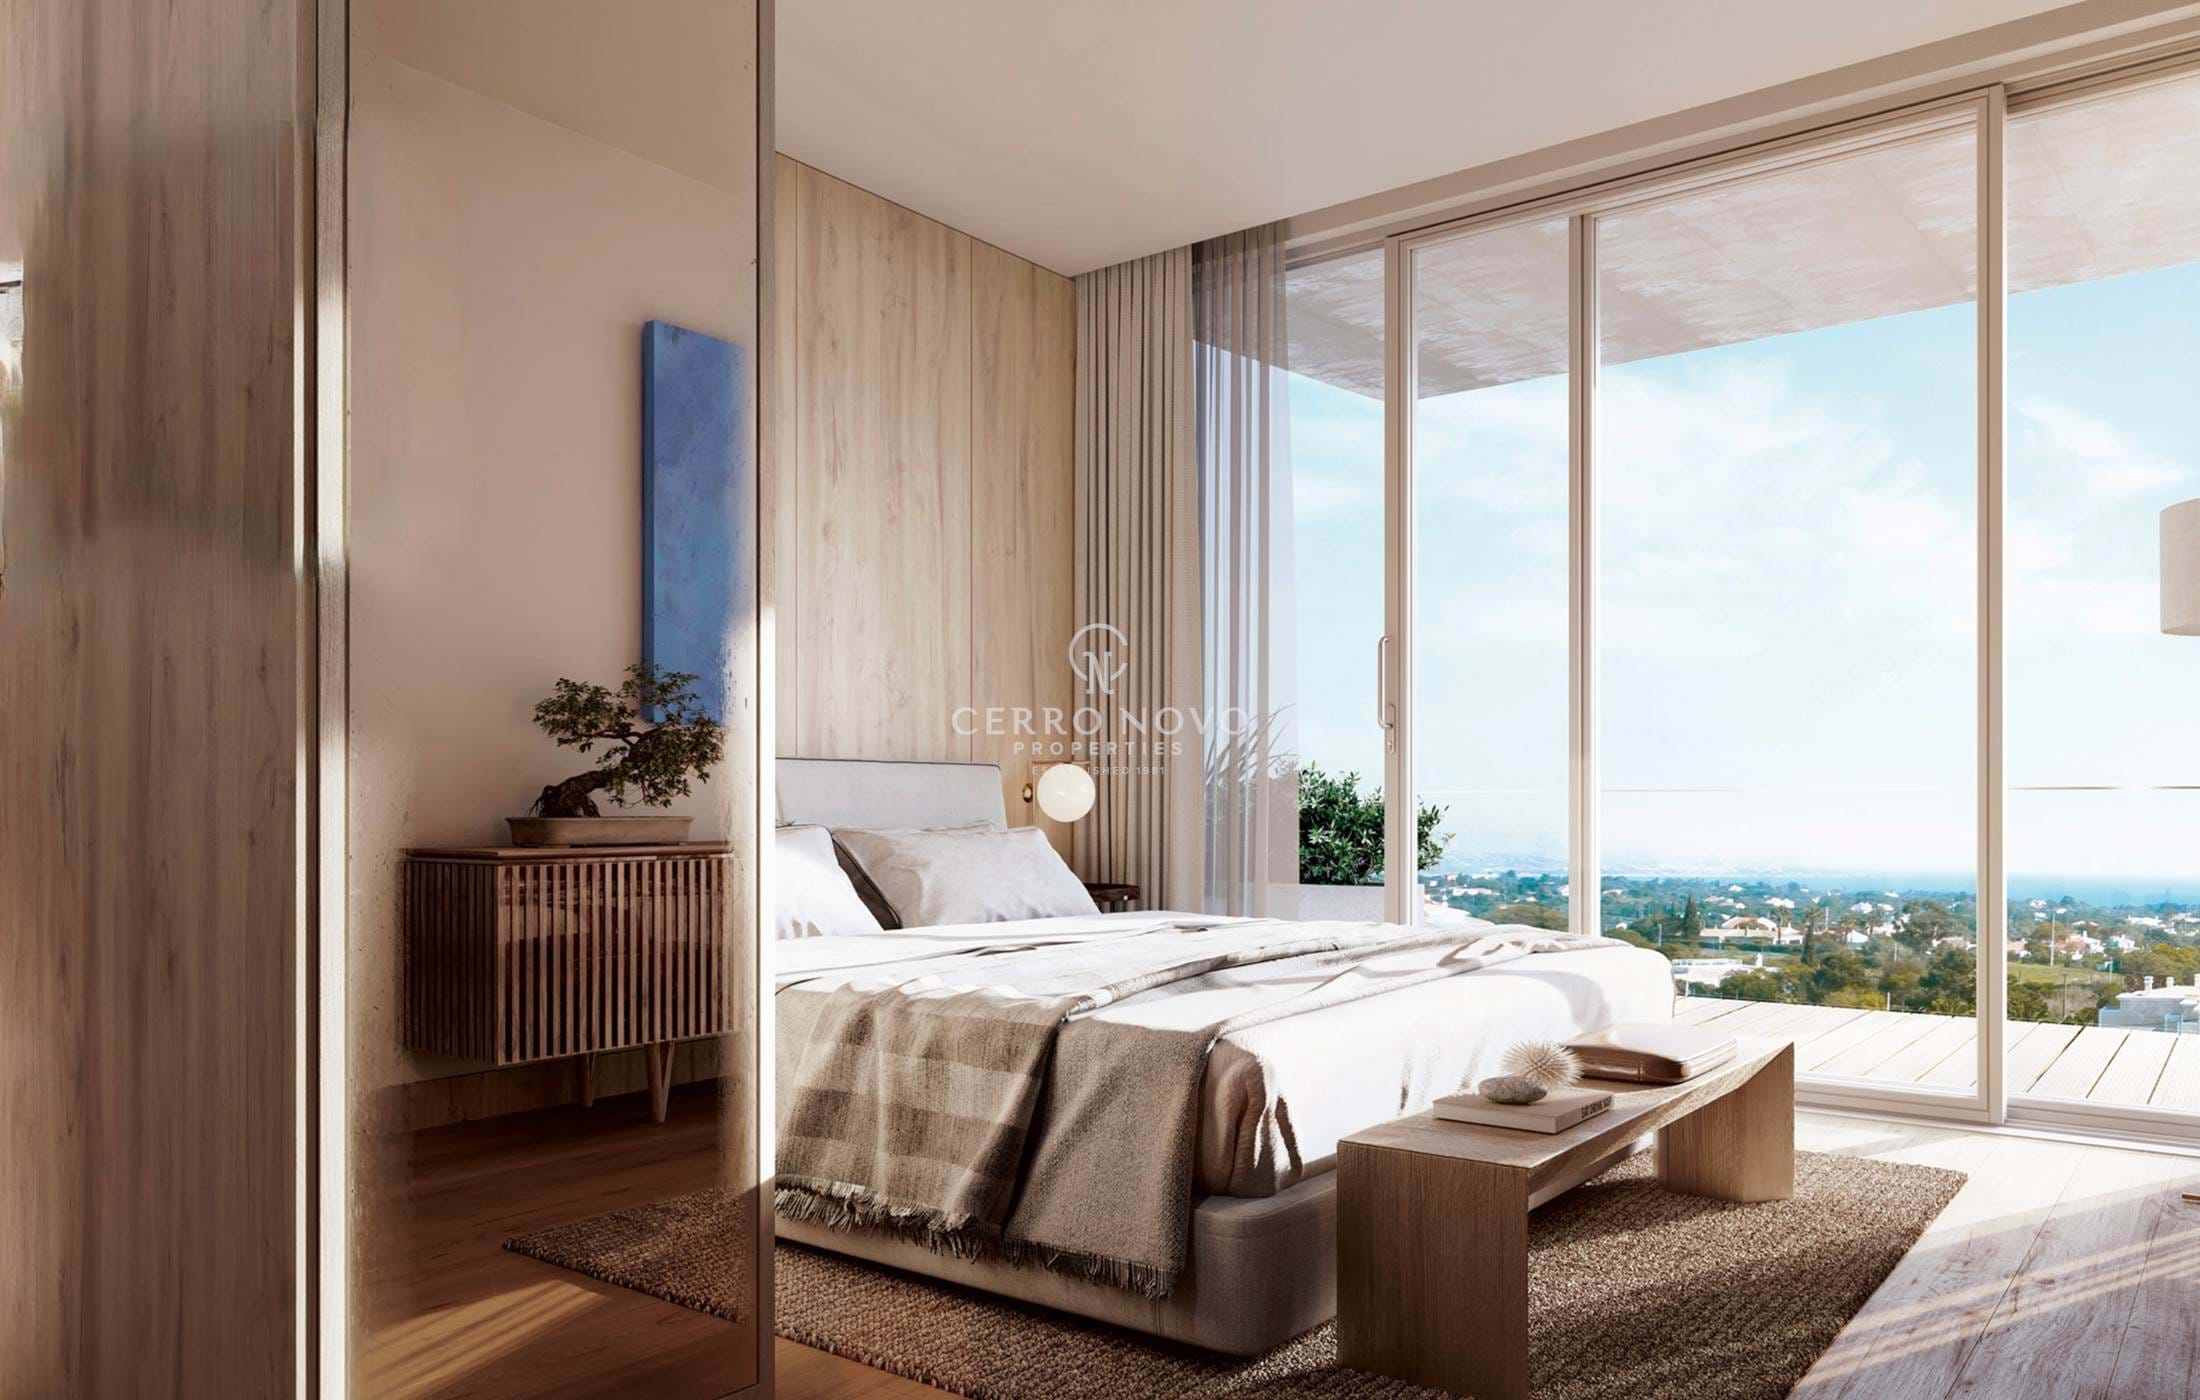 Luxury, bespoke apartments in exclusive new-build Carvoeiro condominium